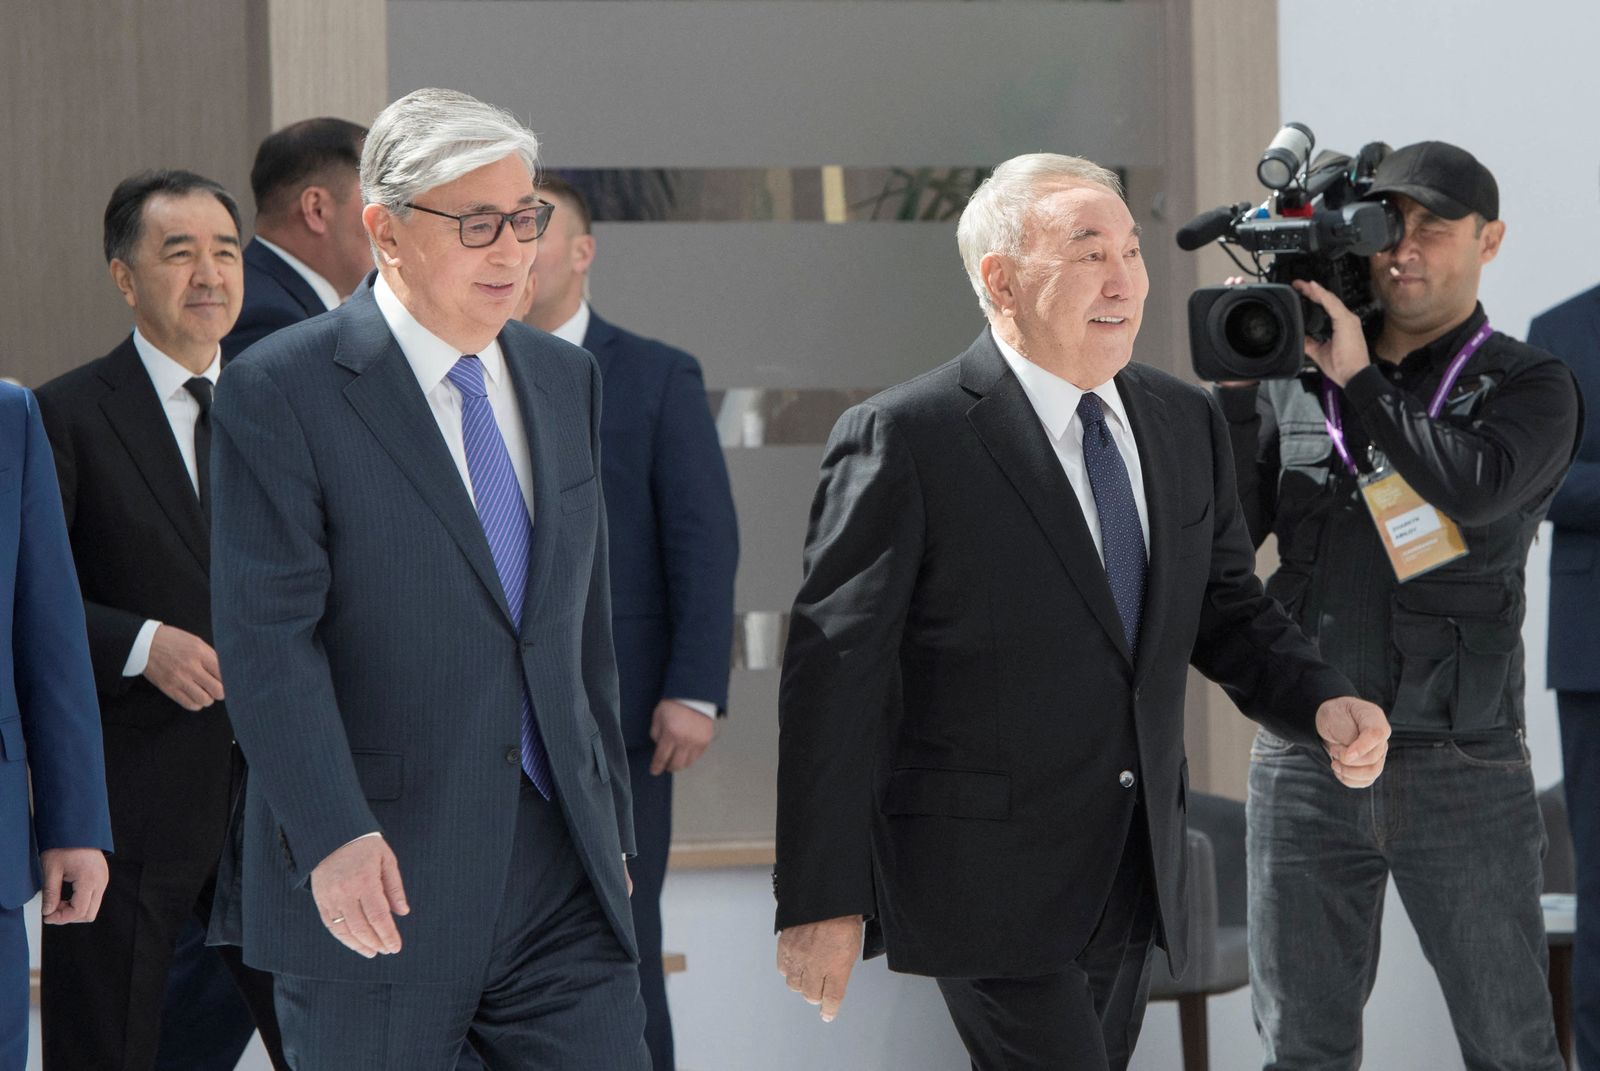 رئيس كازاخستان قاسم جومارت توكاييف (يسار) إلى جانب الرئيس السابق نور سلطان. 16 مايو 2019. - REUTERS